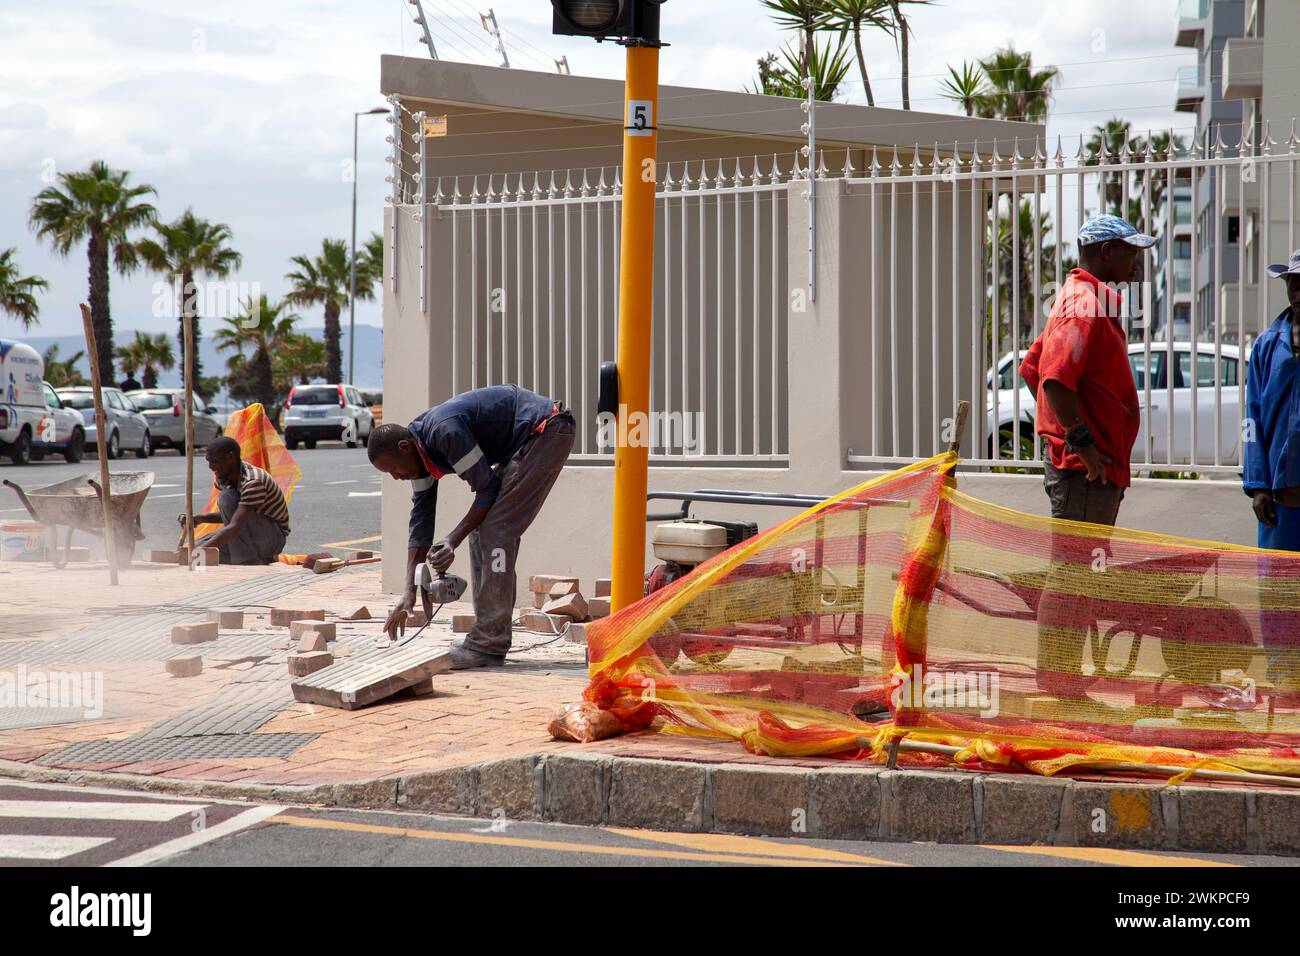 Ouvriers réparation de chaussée à Mouille point, Cape Town - Afrique du Sud Banque D'Images